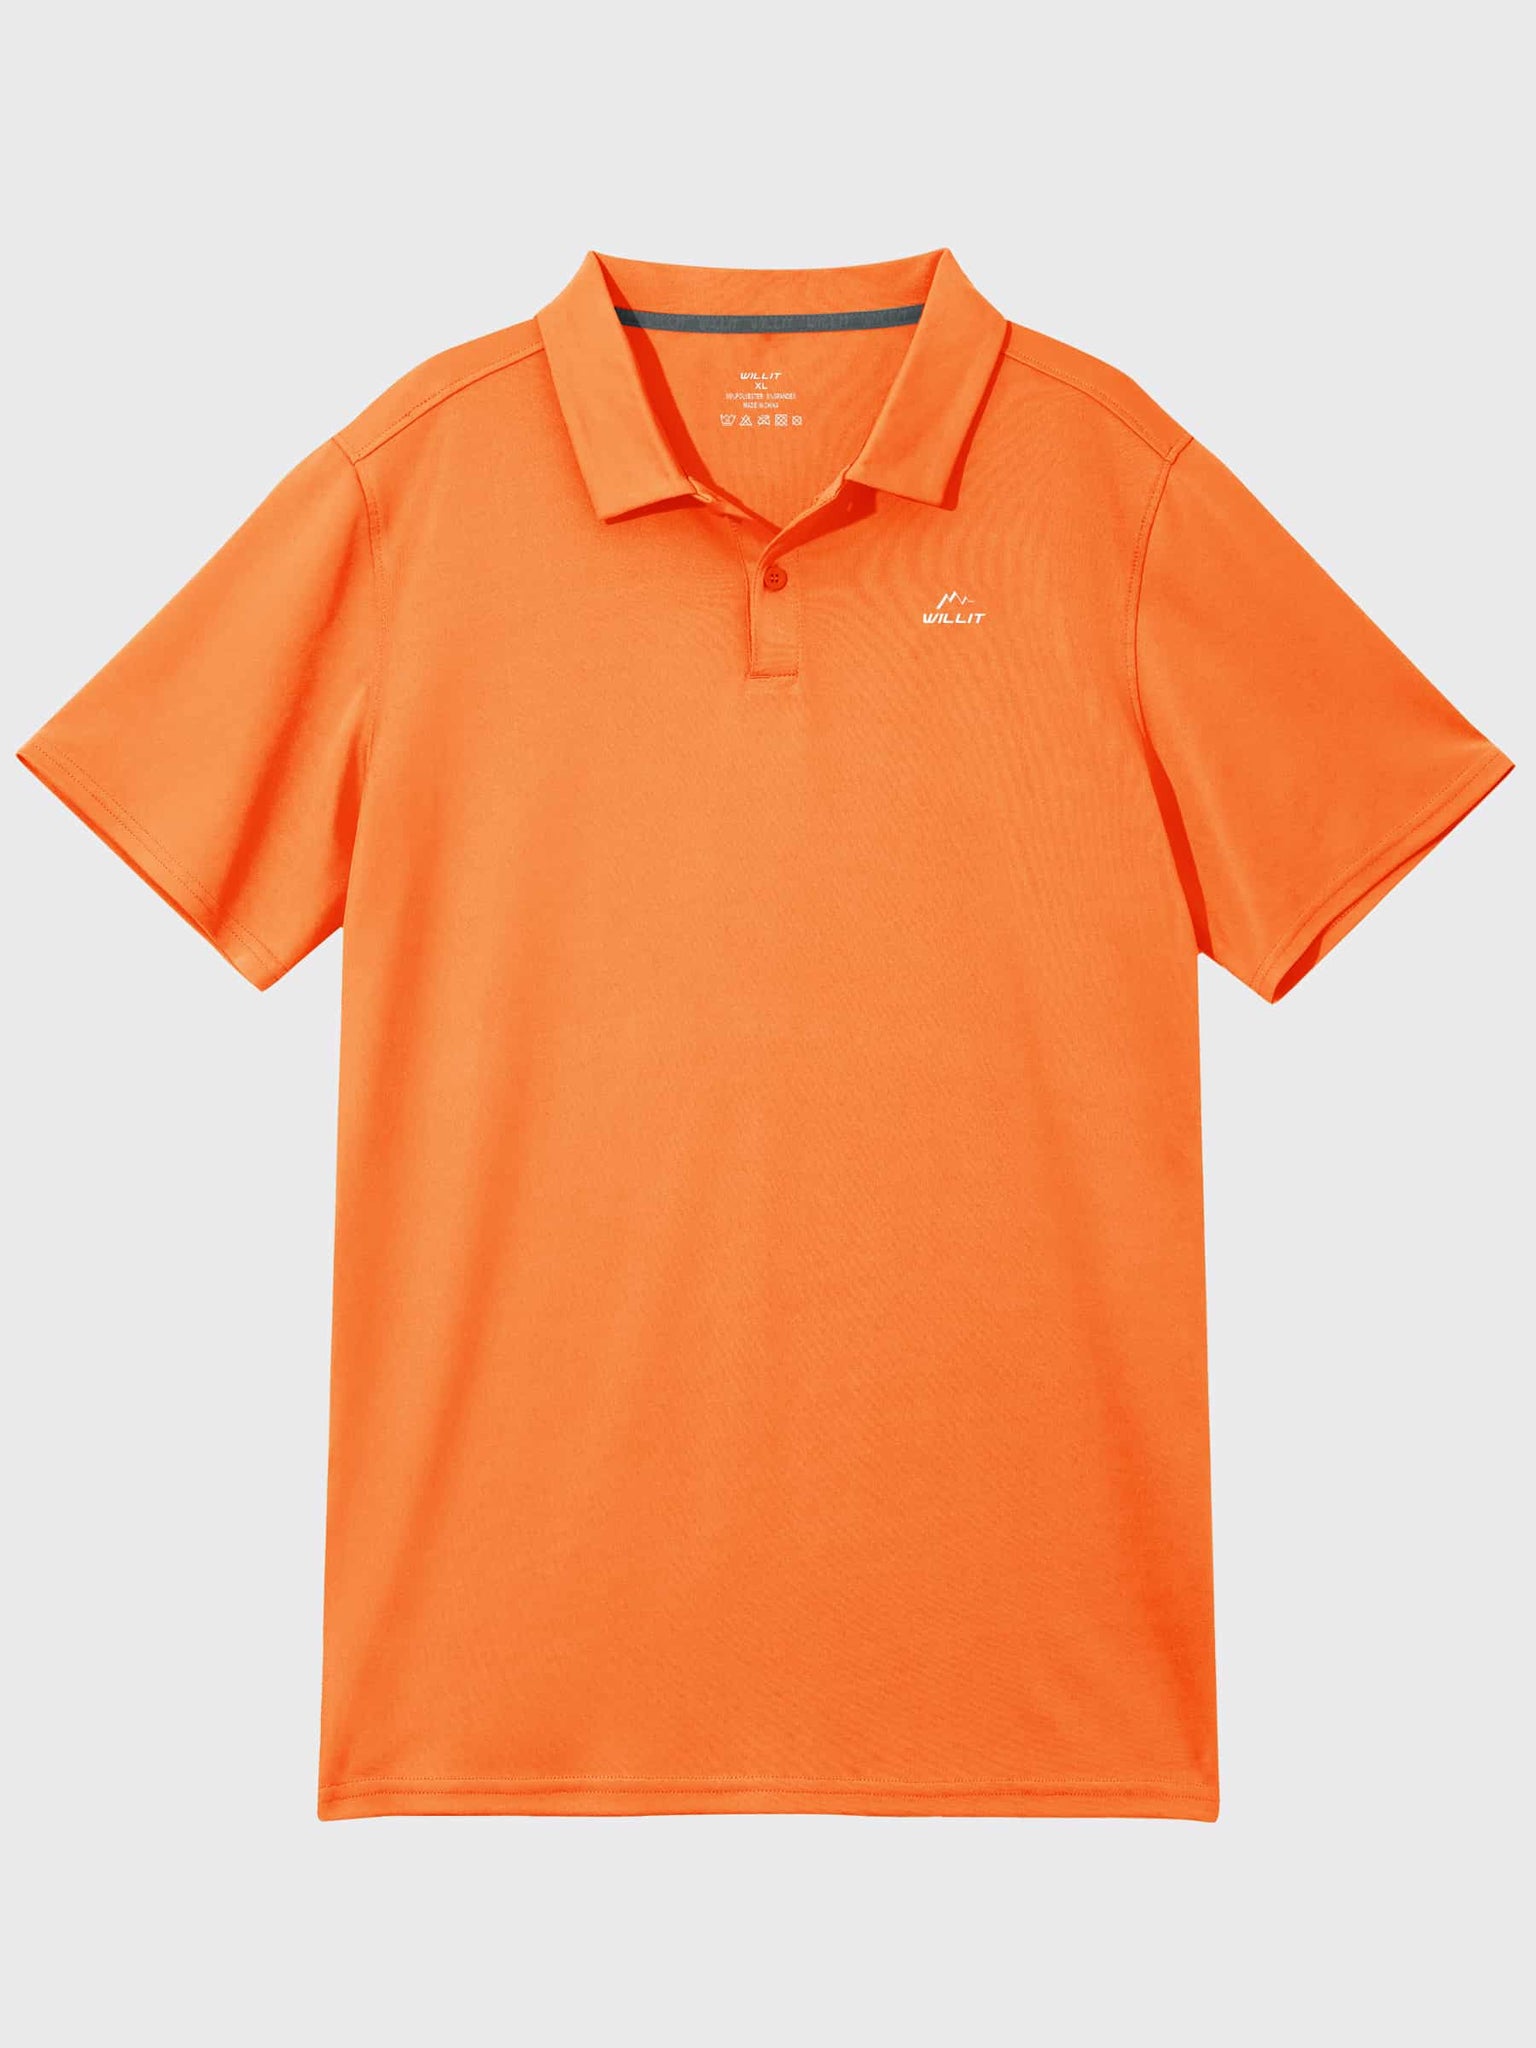 Youth Golf Polo Sun Shirts_Orange_laydown4